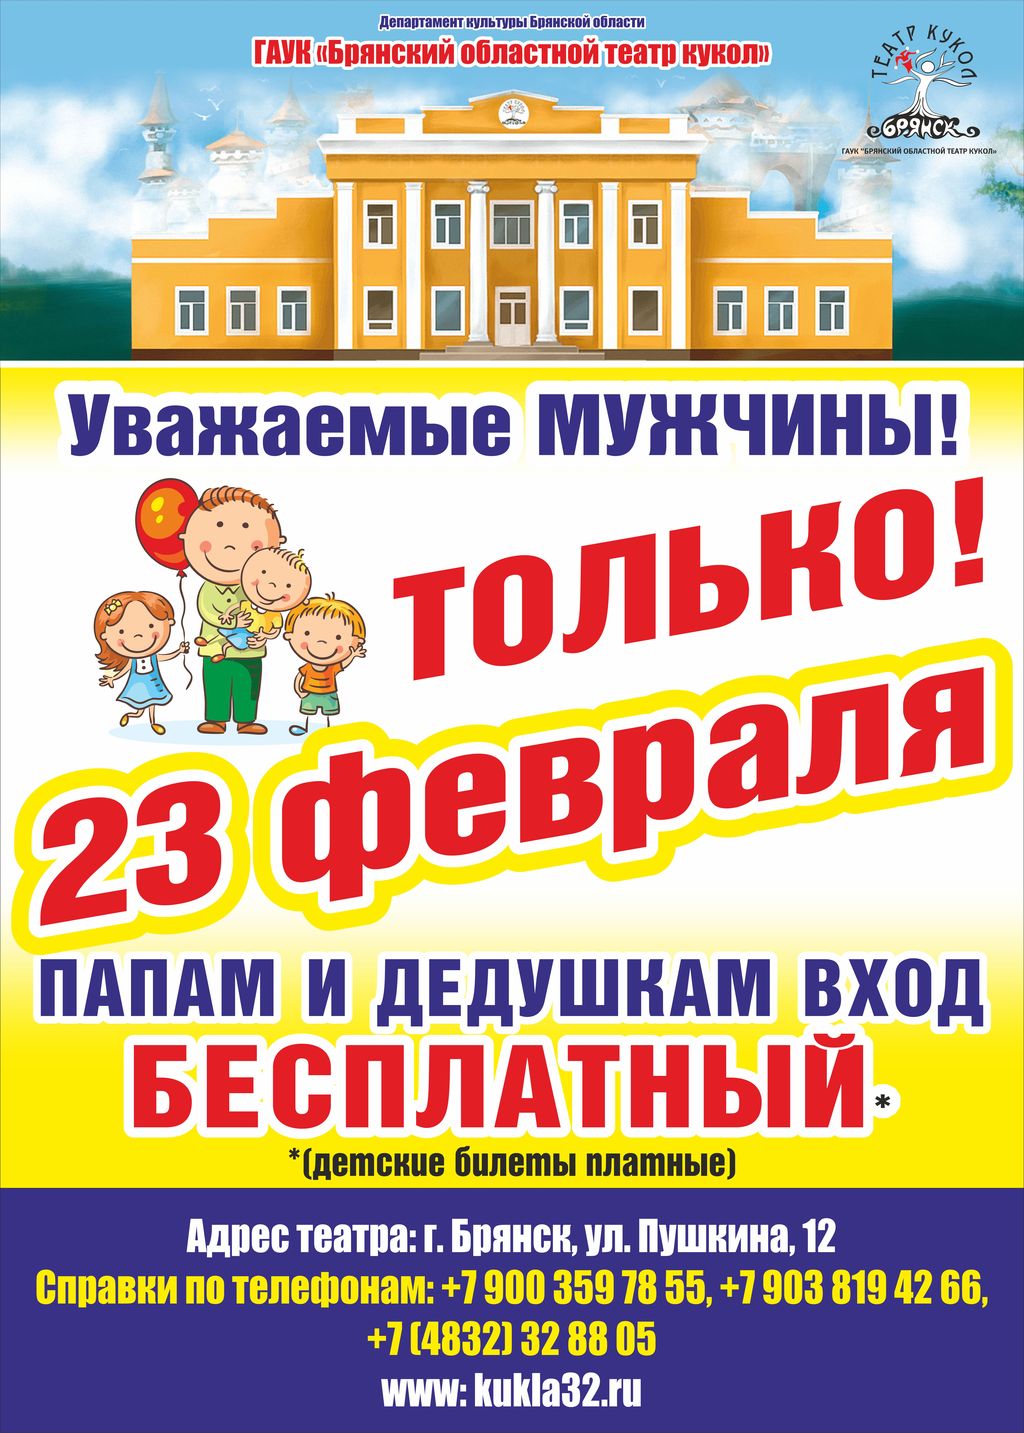 Отцы и дедушки бесплатно посетят праздничный спектакль в кукольном театре Брянска